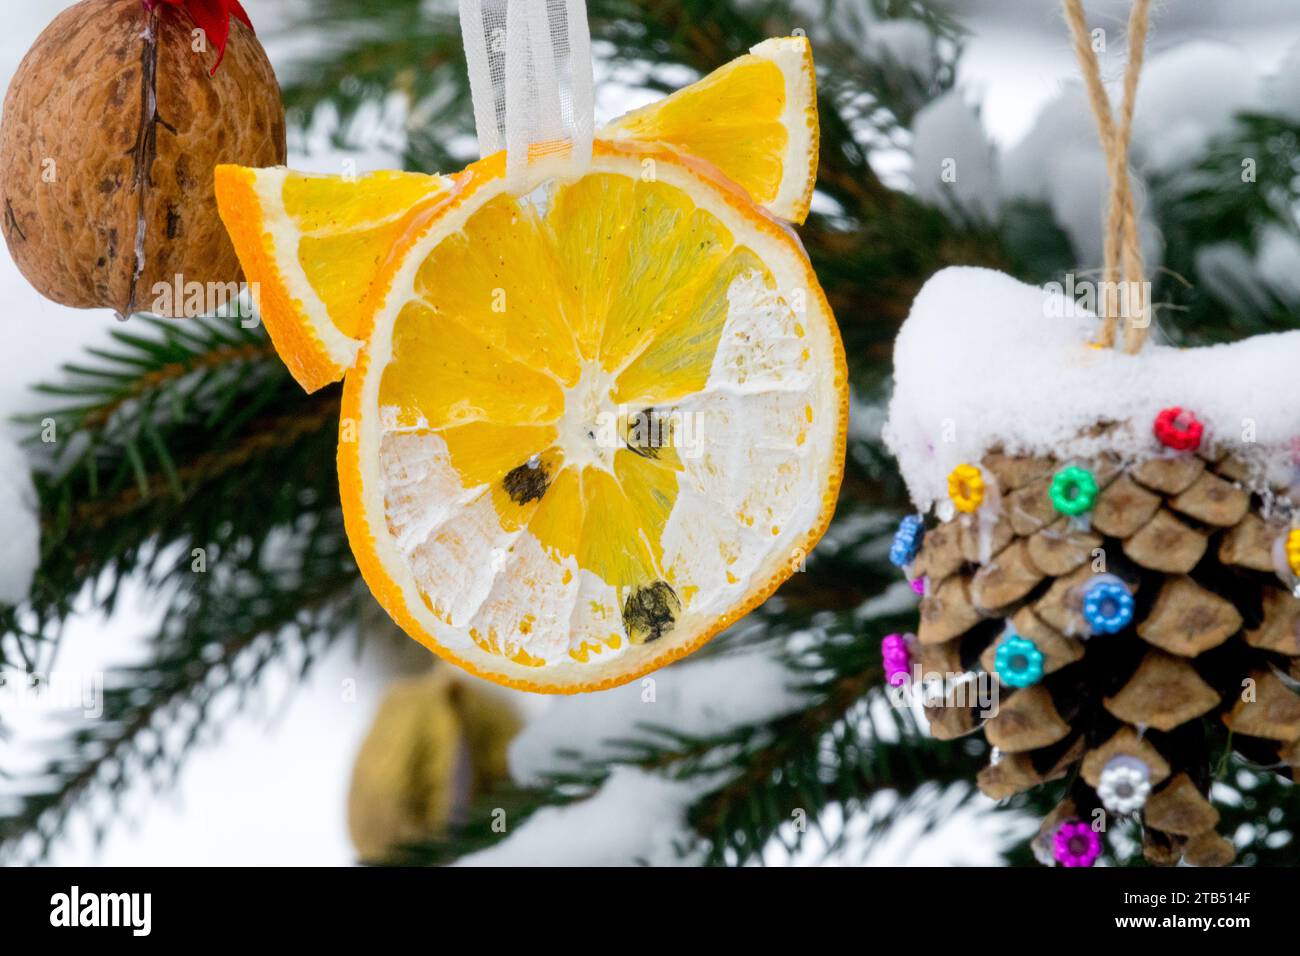 Décoration de Noël maison, un morceau tranché d'orange, accroché à un cône d'arbre de Noël extérieur, noix en hiver, renard Banque D'Images